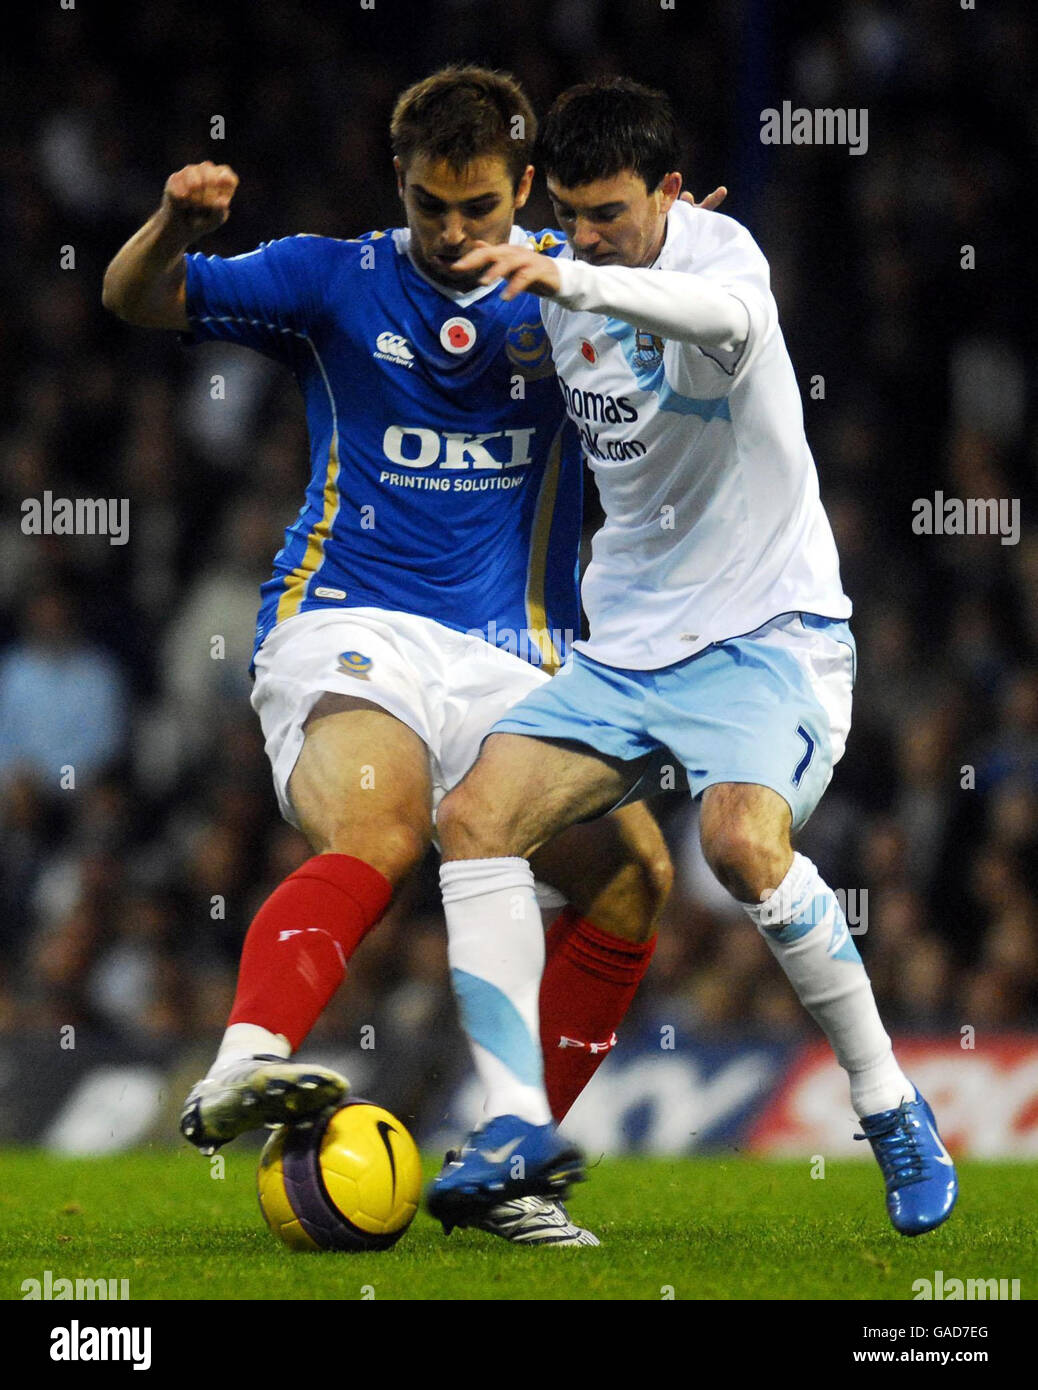 Fútbol - Barclays Premier League - Portsmouth v Manchester City - Fratton Park Foto de stock